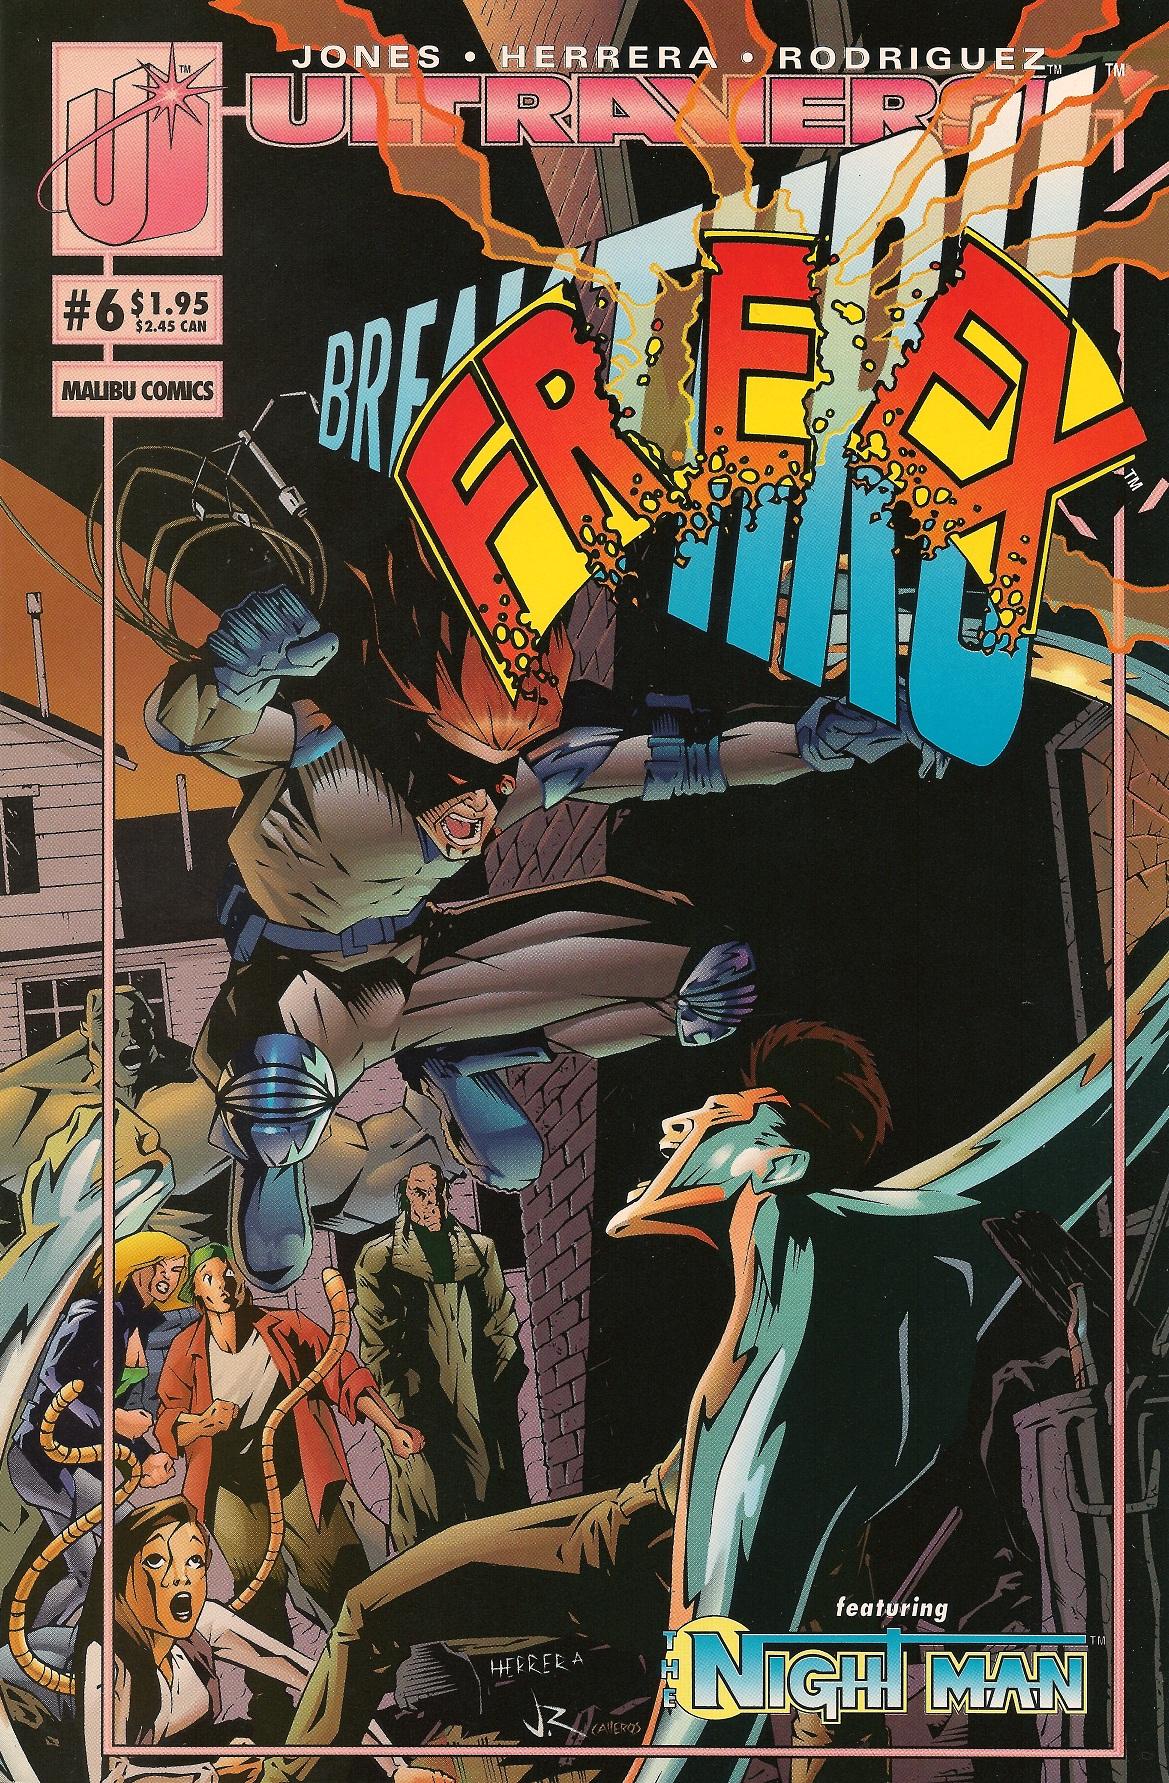 Freex Vol. 1 #6